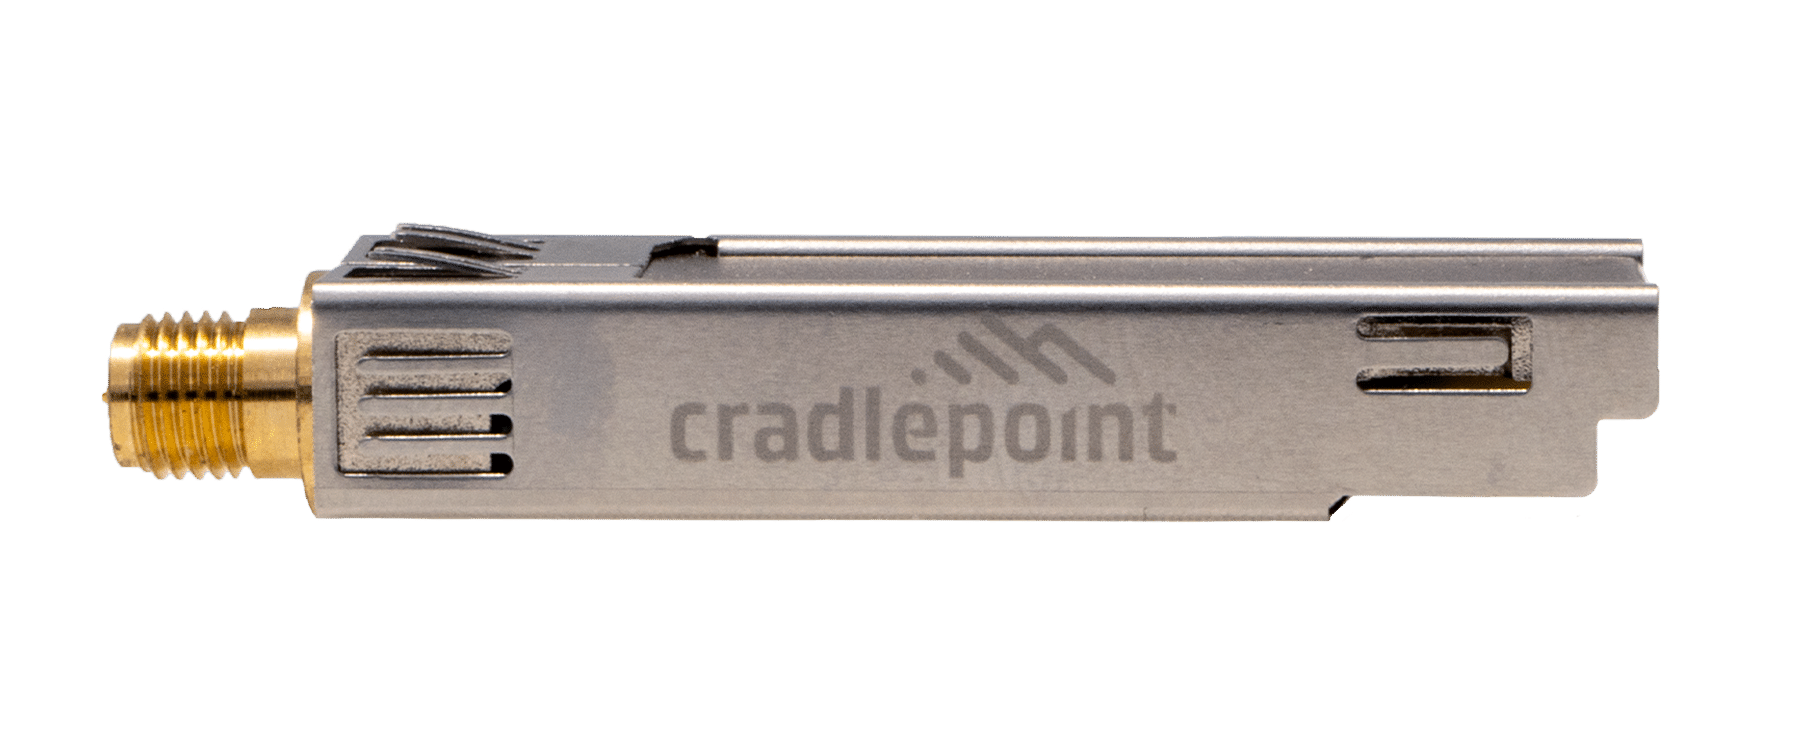 CradlePoint MC20BT Bluetooth -module voor E300 en E3000